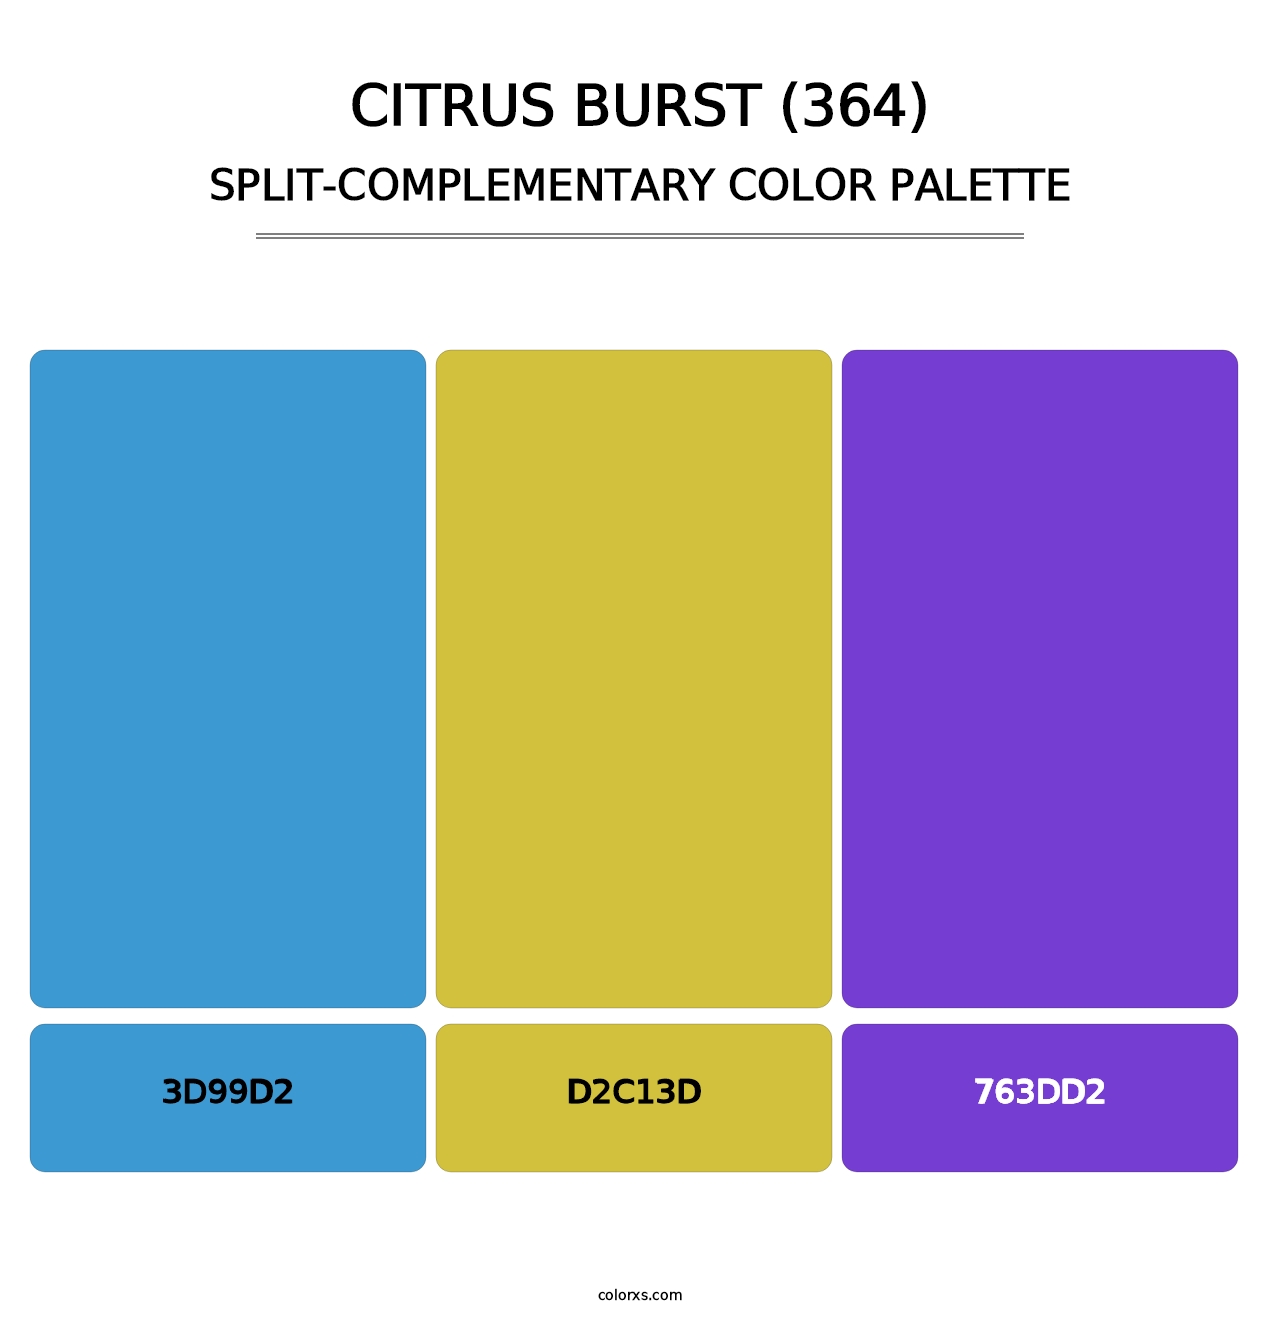 Citrus Burst (364) - Split-Complementary Color Palette